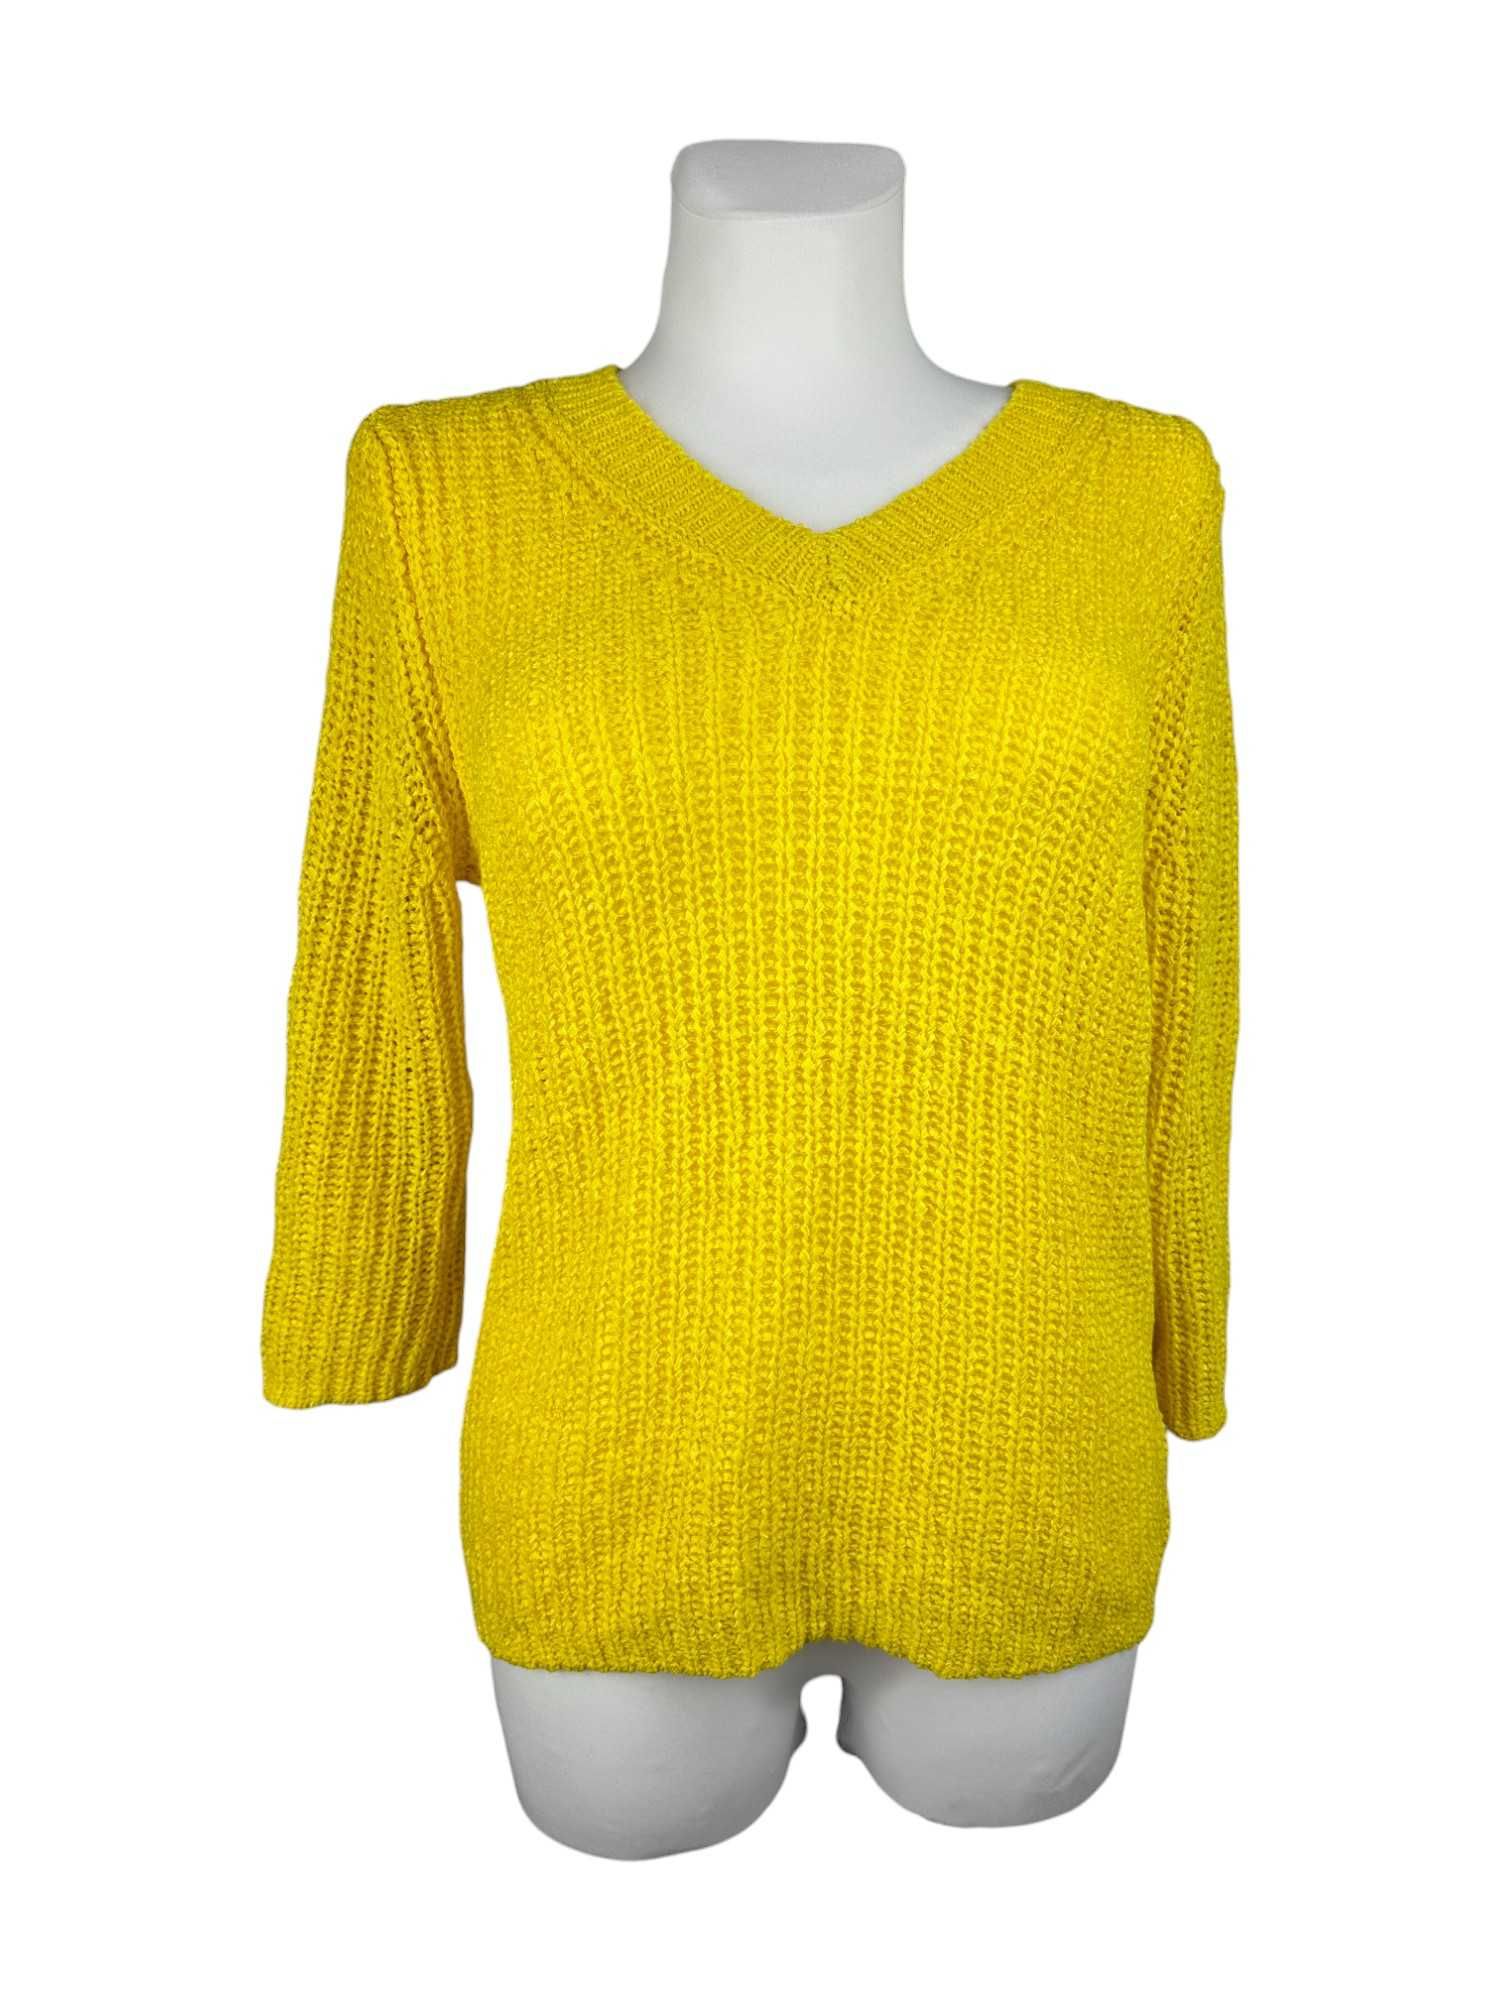 Sweter Damski Żółty [OUI] [r.38]